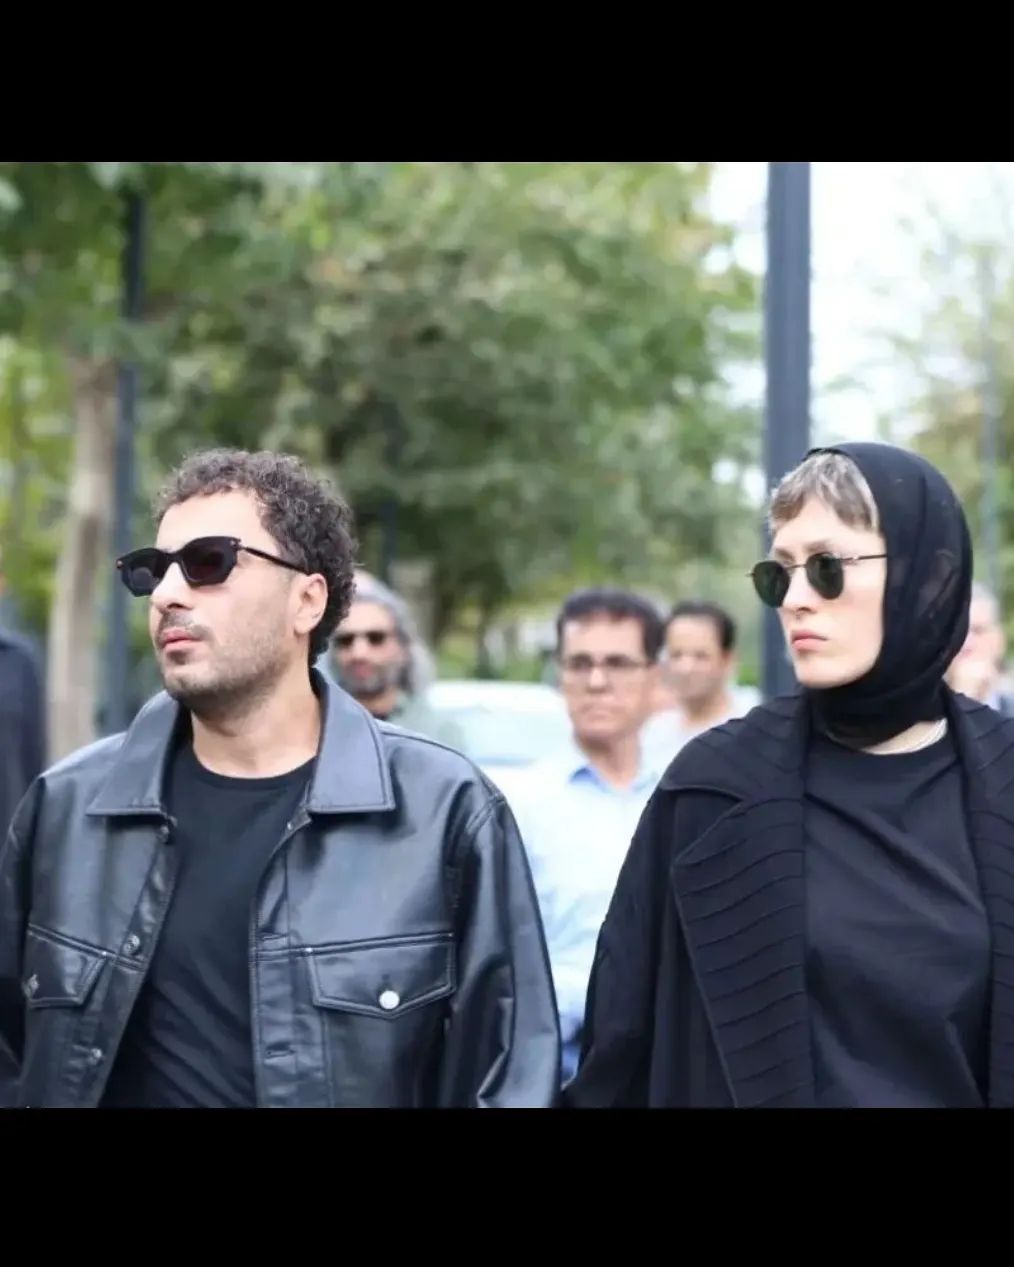 نوید محمدزاده و فرشته حسینی در مراسم تشییع آتیلا پسیانی+عکس